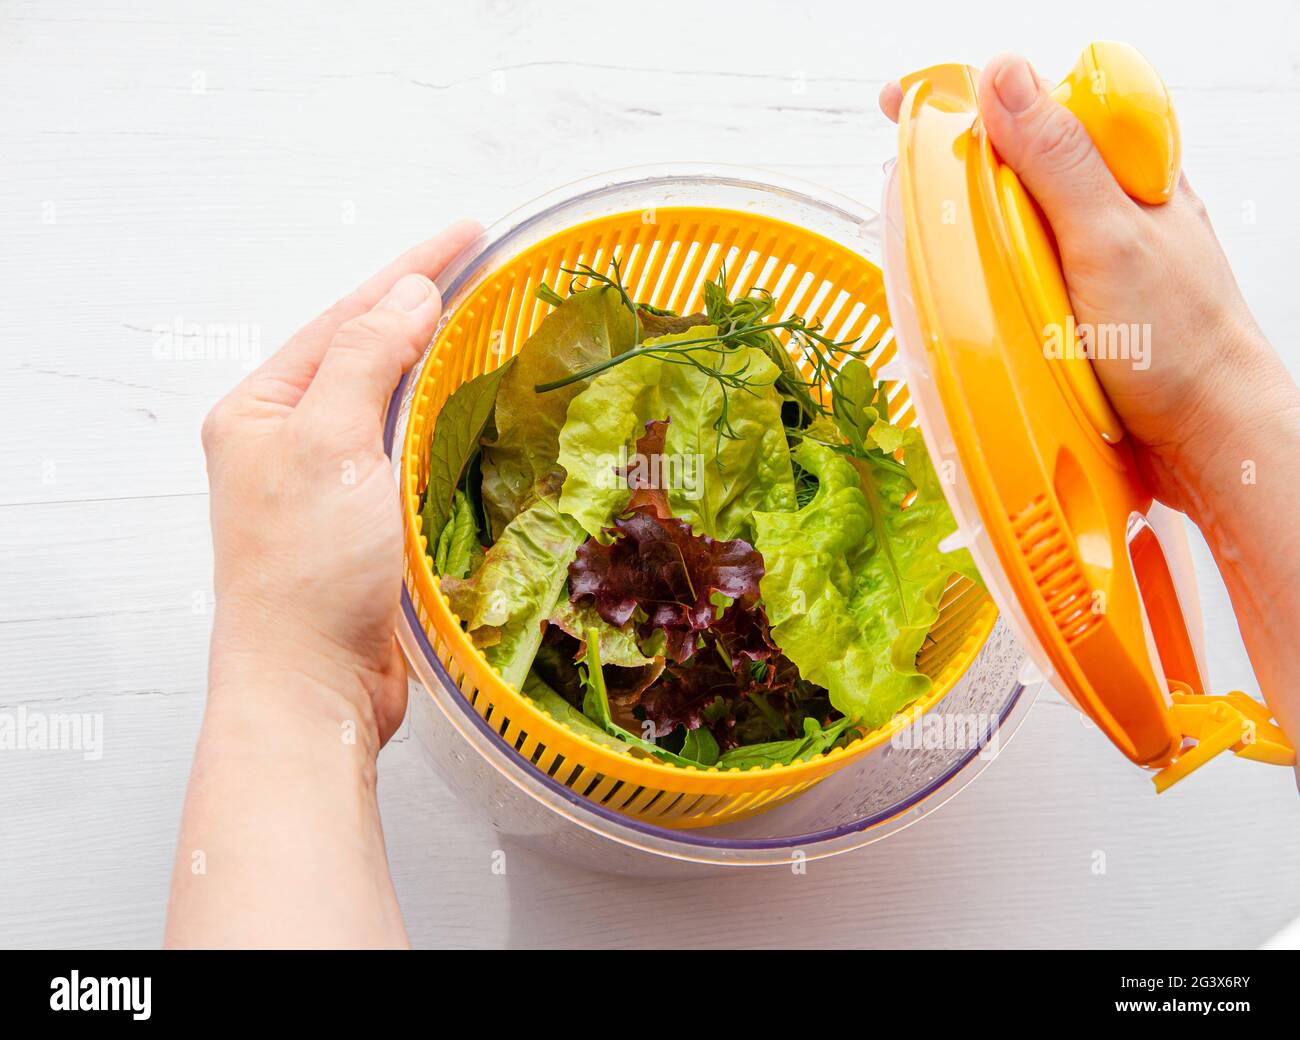 Vista superior de las manos de la mujer sosteniendo y secando la ensalada en el recipiente de la herramienta del ojal, verdes frondosos sanos adentro. Forma cómoda de lavar y secar ensalada. Foto de stock